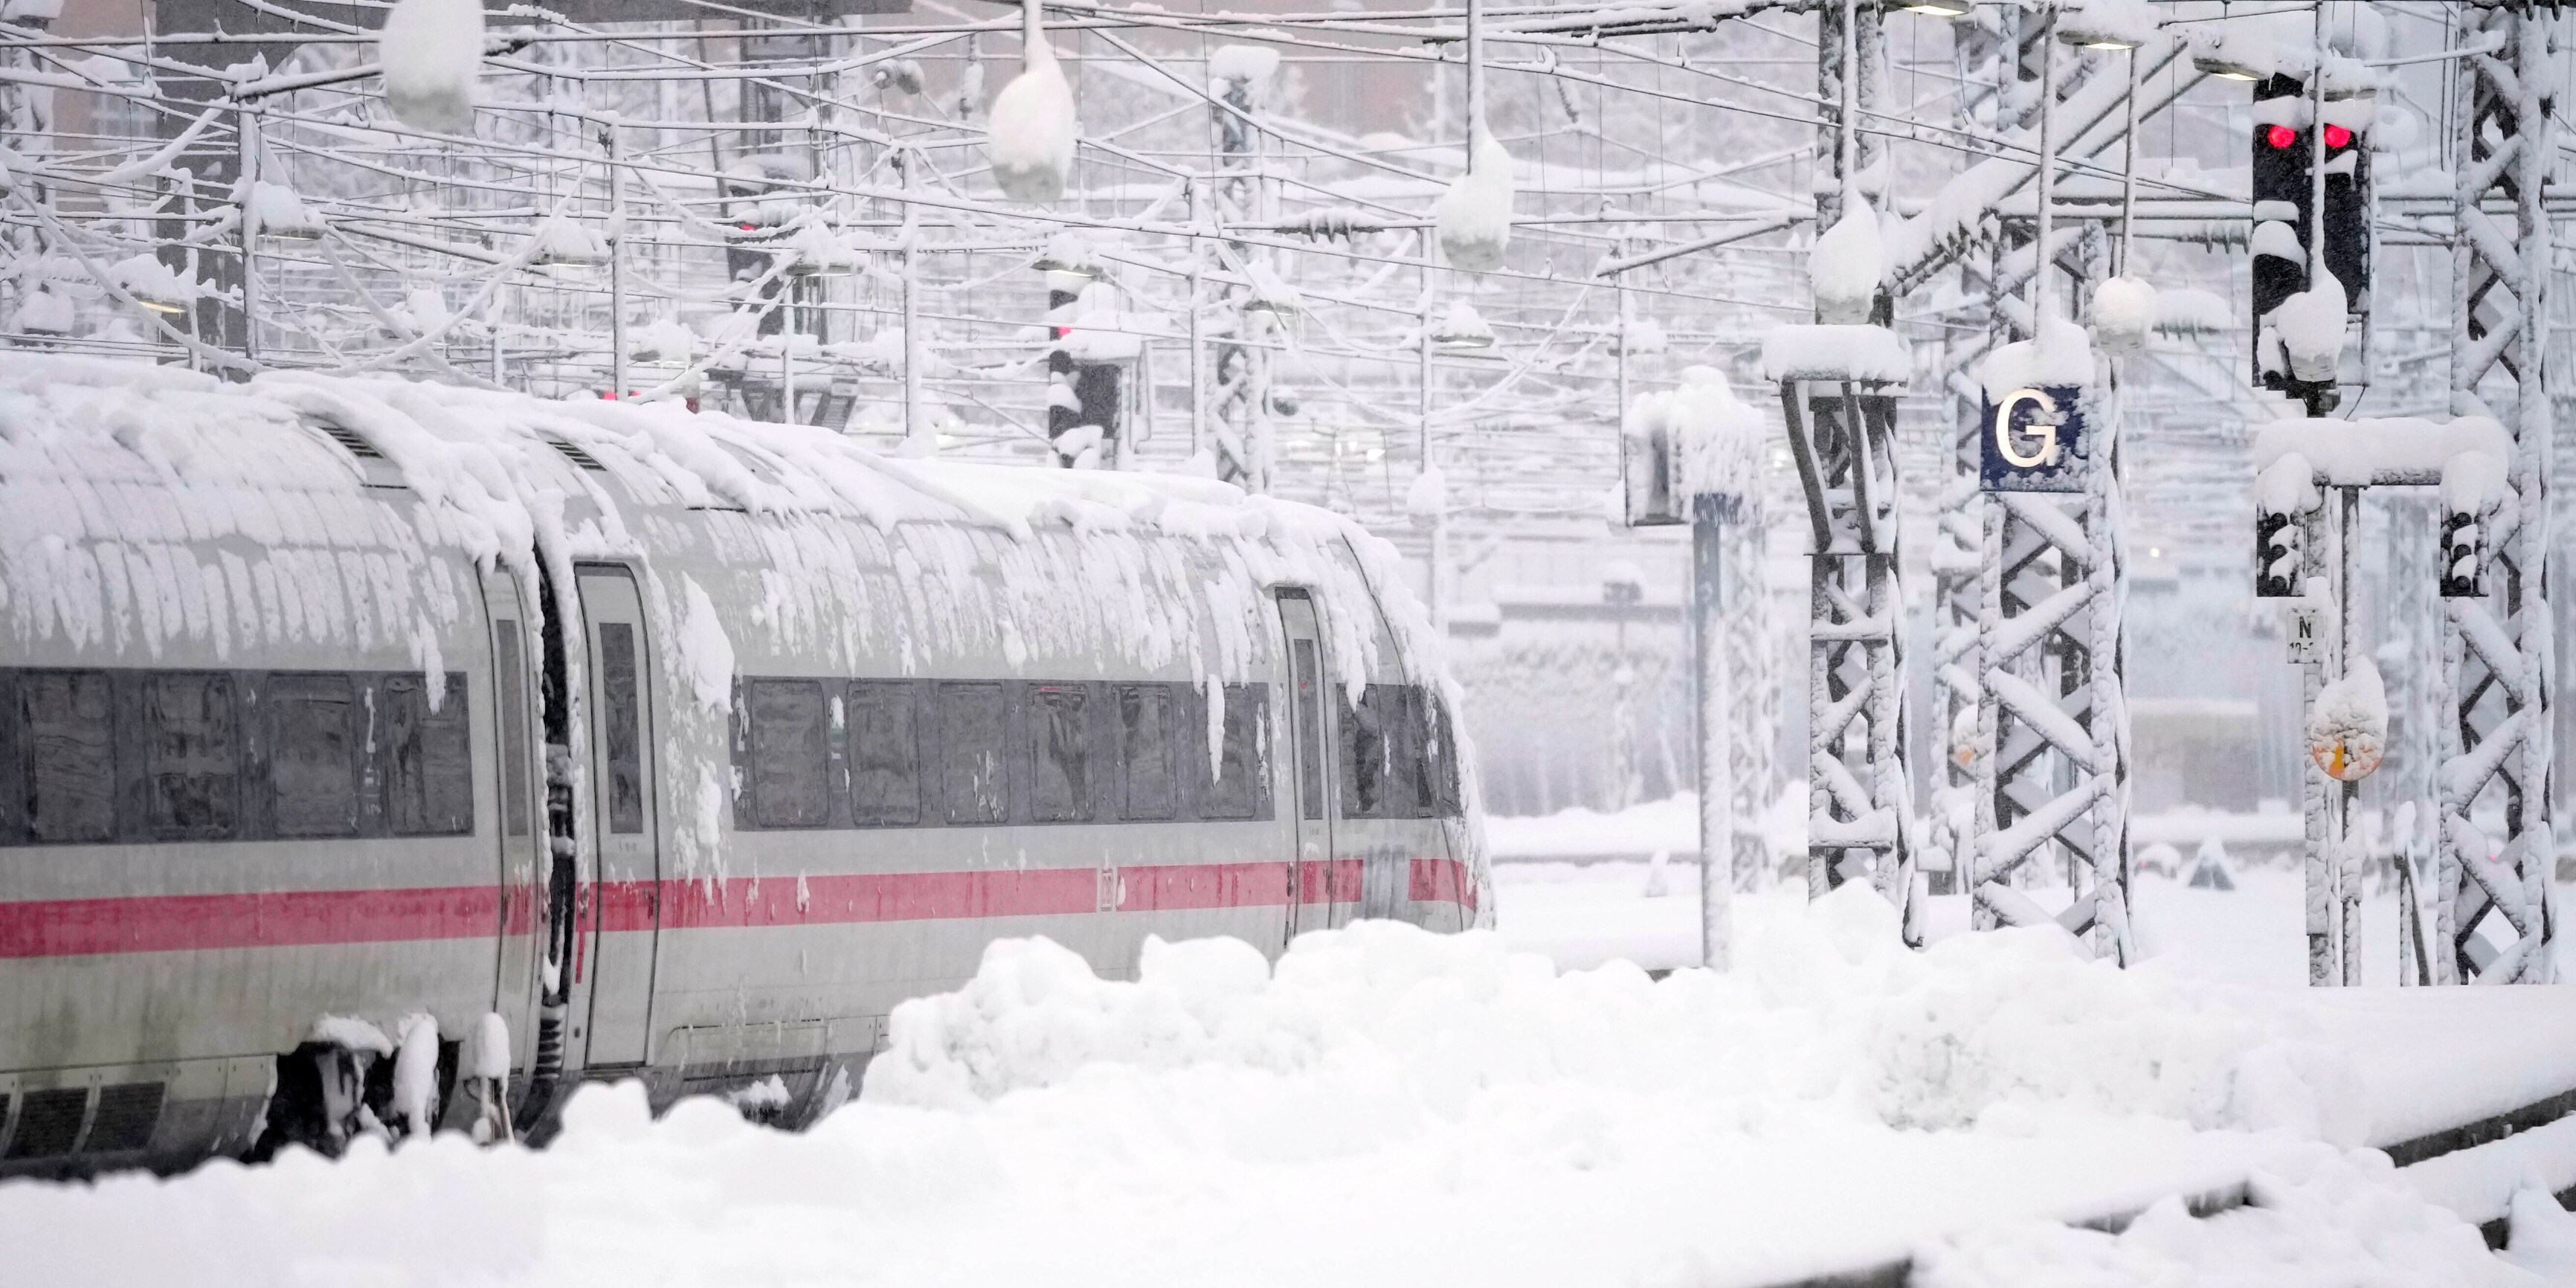 wetter im ticker - nach rekordschnee kommt der kälte-schock - österreich versinkt in schneemassen